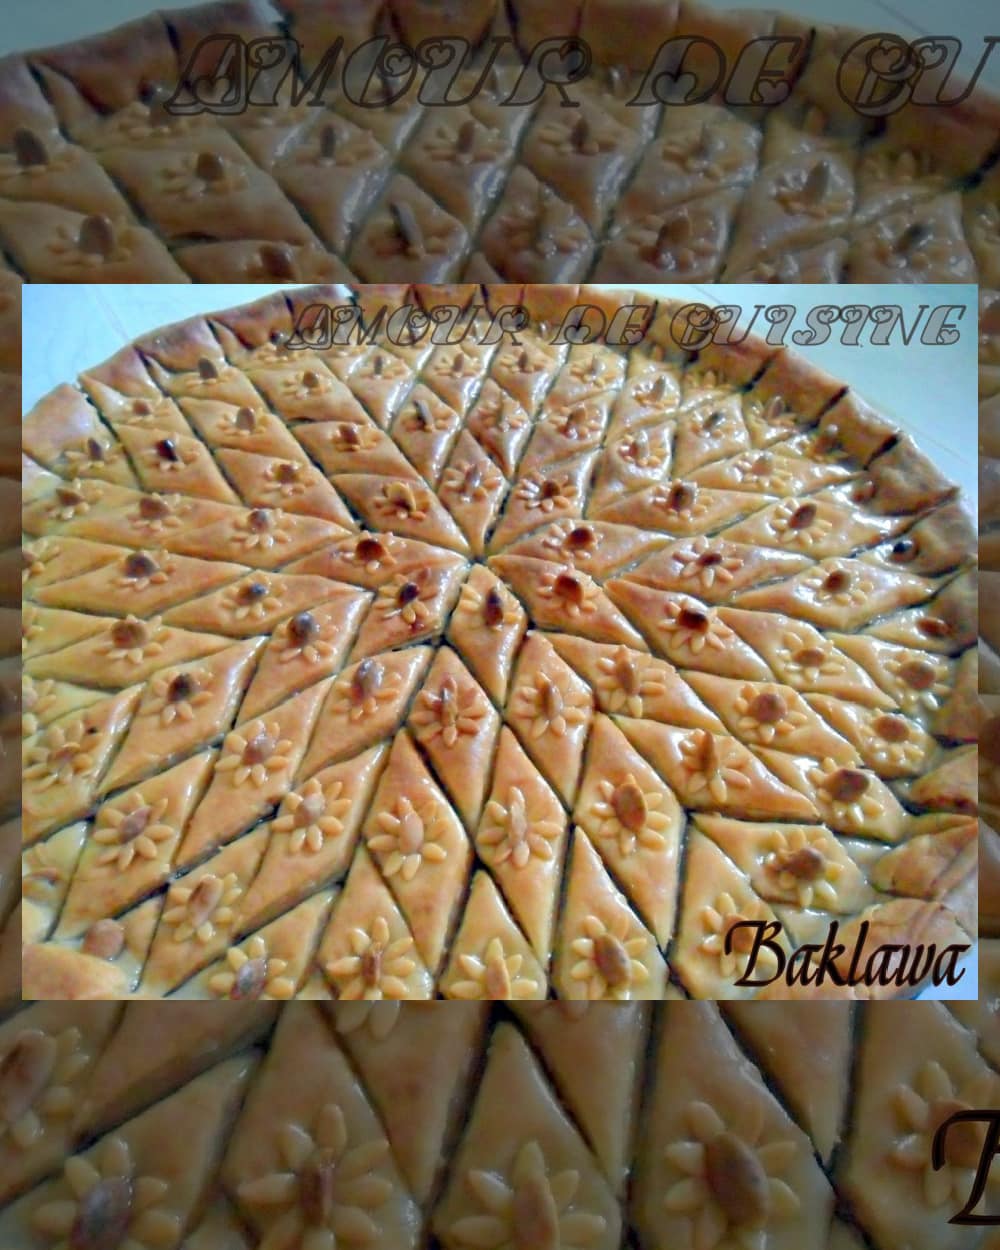 baklawa constantinoise, gateau algerien au miel et fruits secs, baklawa traditionnelle